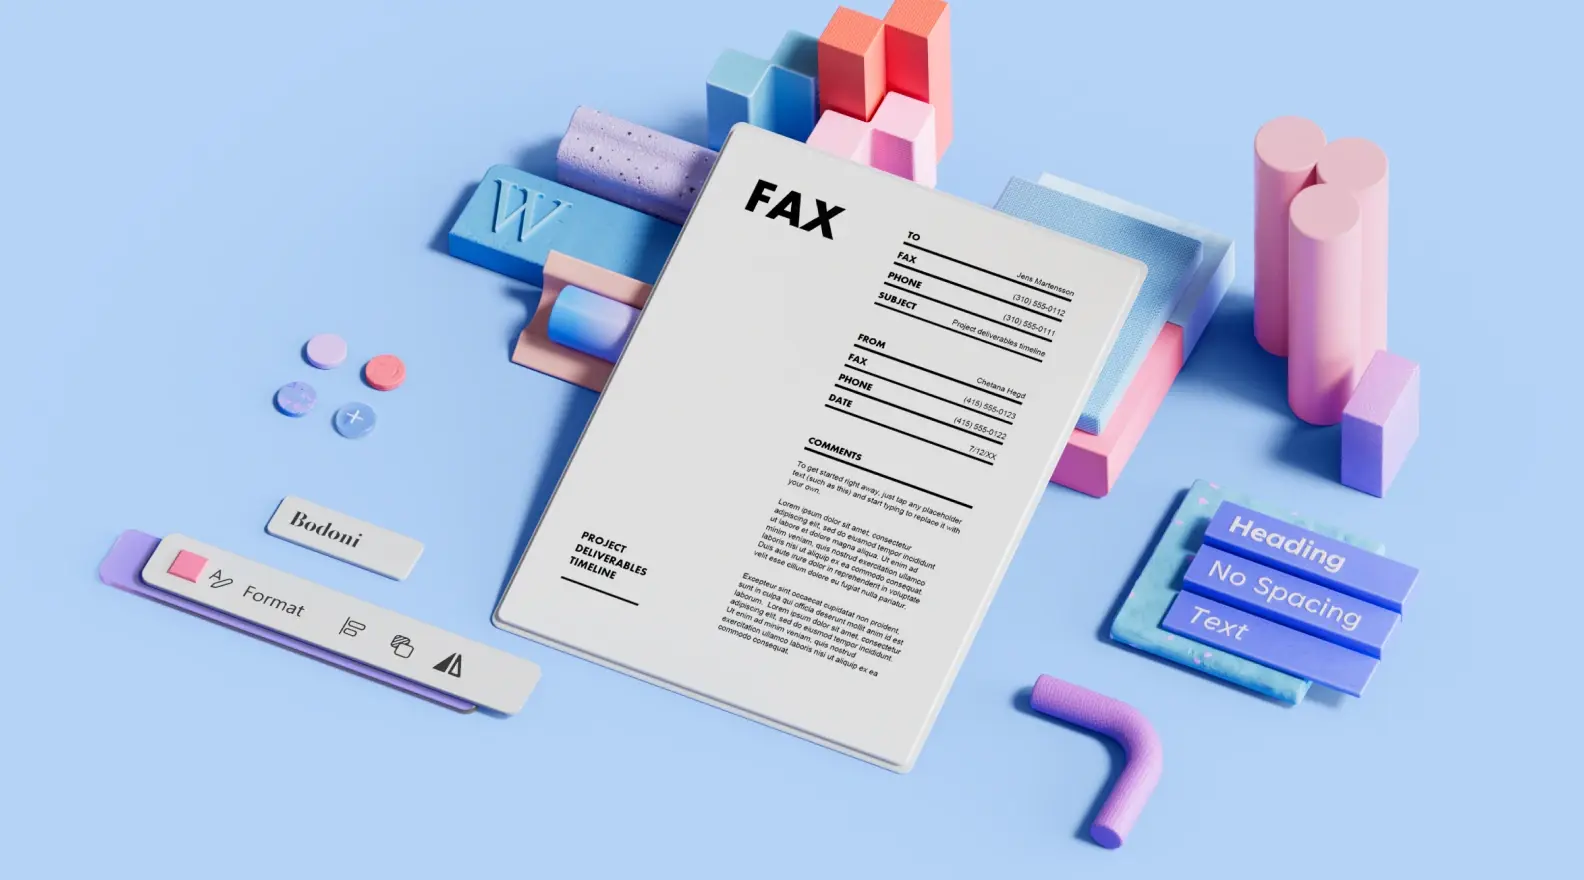 3D 디자인 요소로 둘러싸인 팩스 표지 템플릿